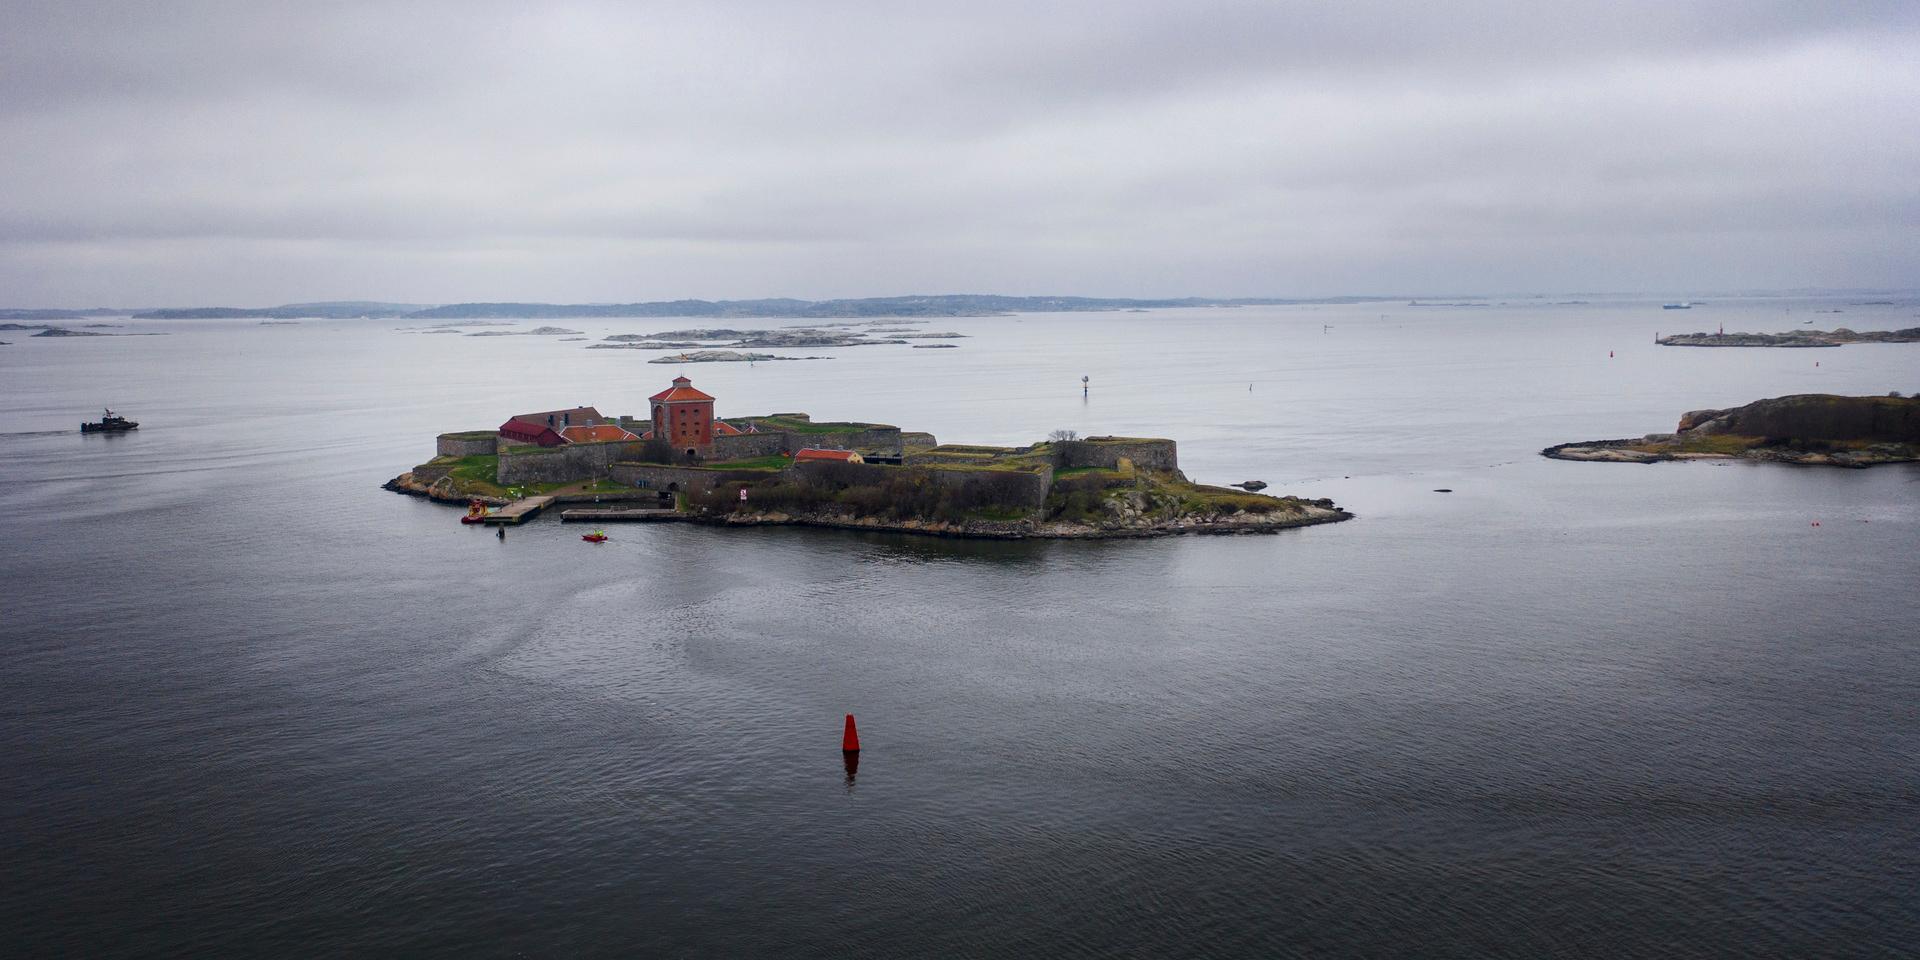 Nya Älvsborgs fästning brukade locka många besökare, men har varit stängd den senaste tiden. Anledningen är att ingen vill driva den. 